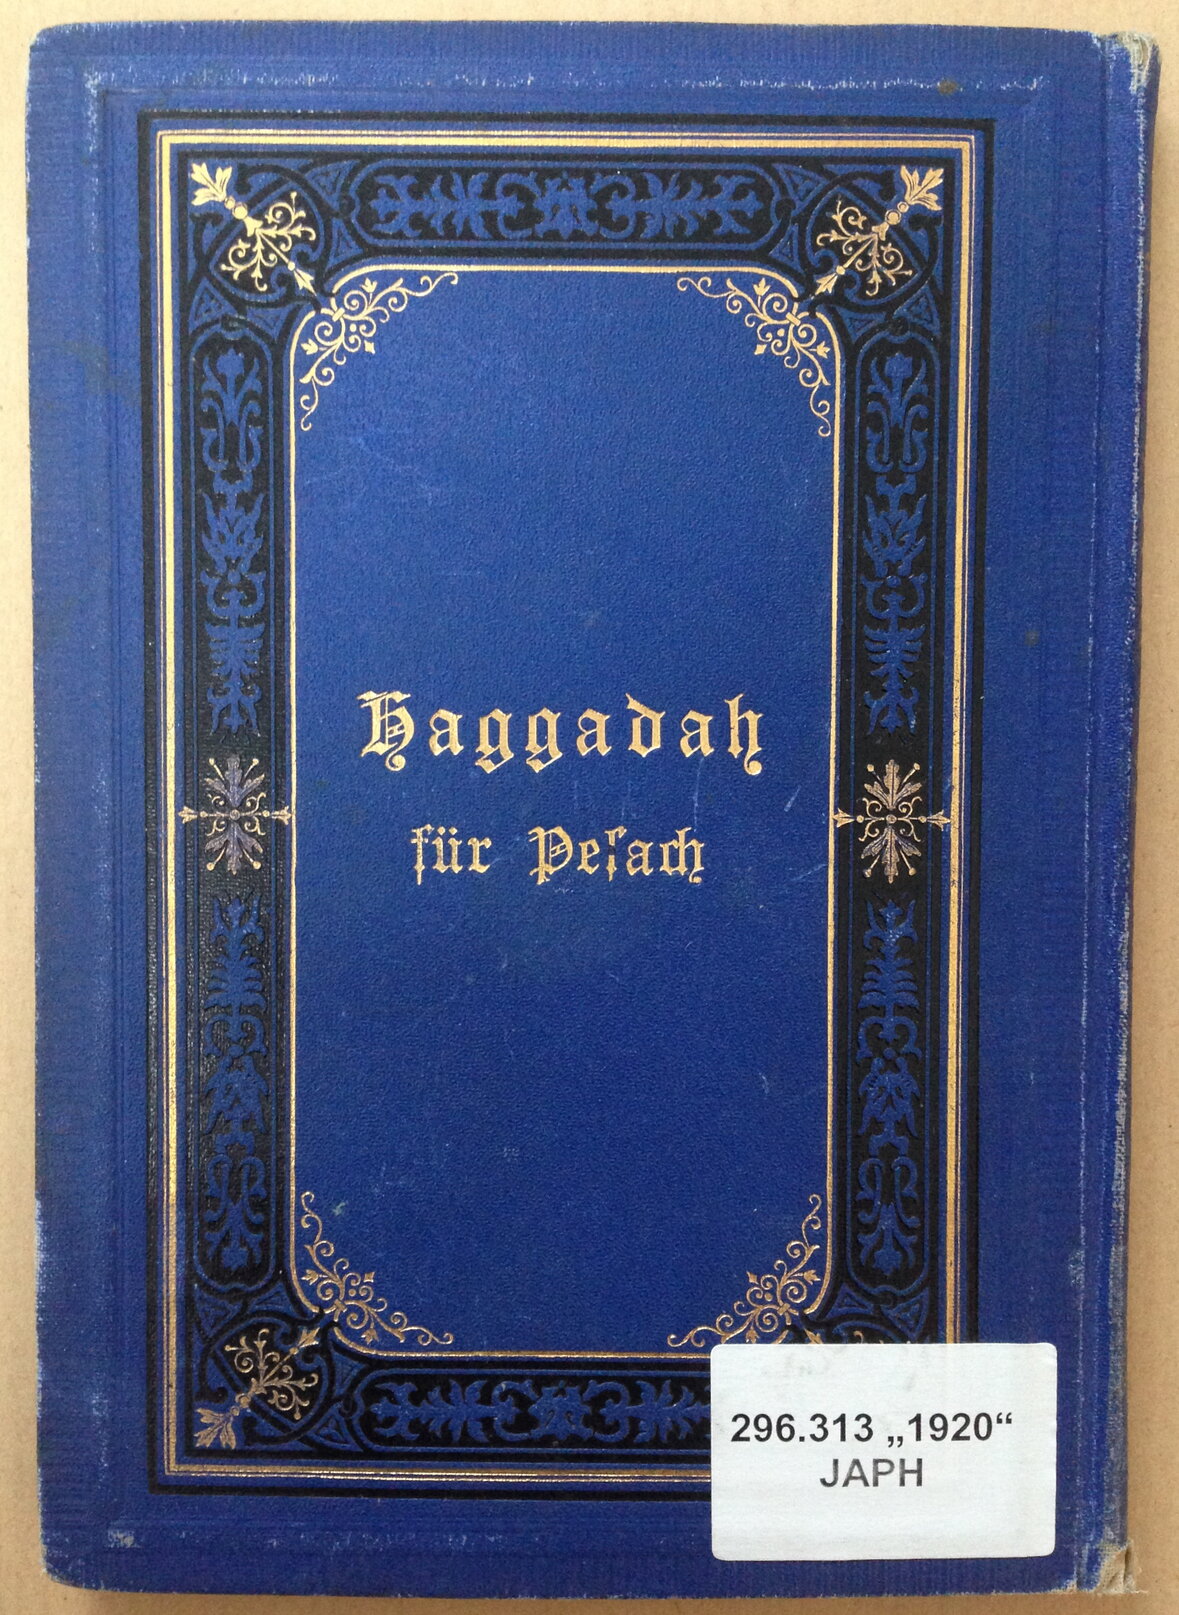 Die Titelseite der Haggadah von Nelly Grünmandel